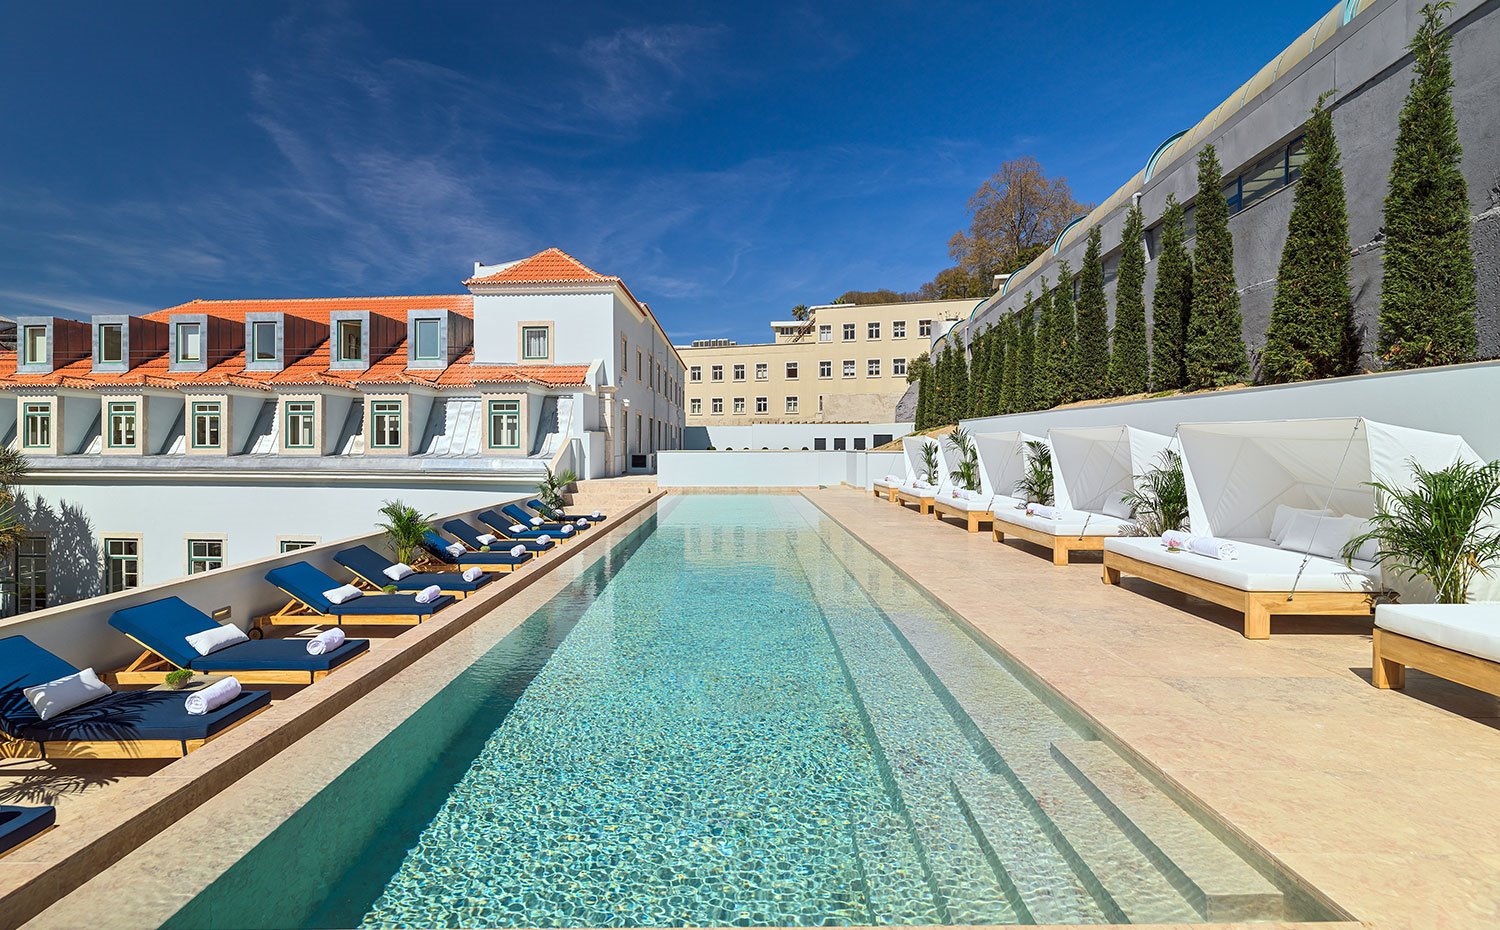 Vistas de la piscina de forma alargada con tumbonas azules y hamacas blancas en lo alto del edificio del hotel